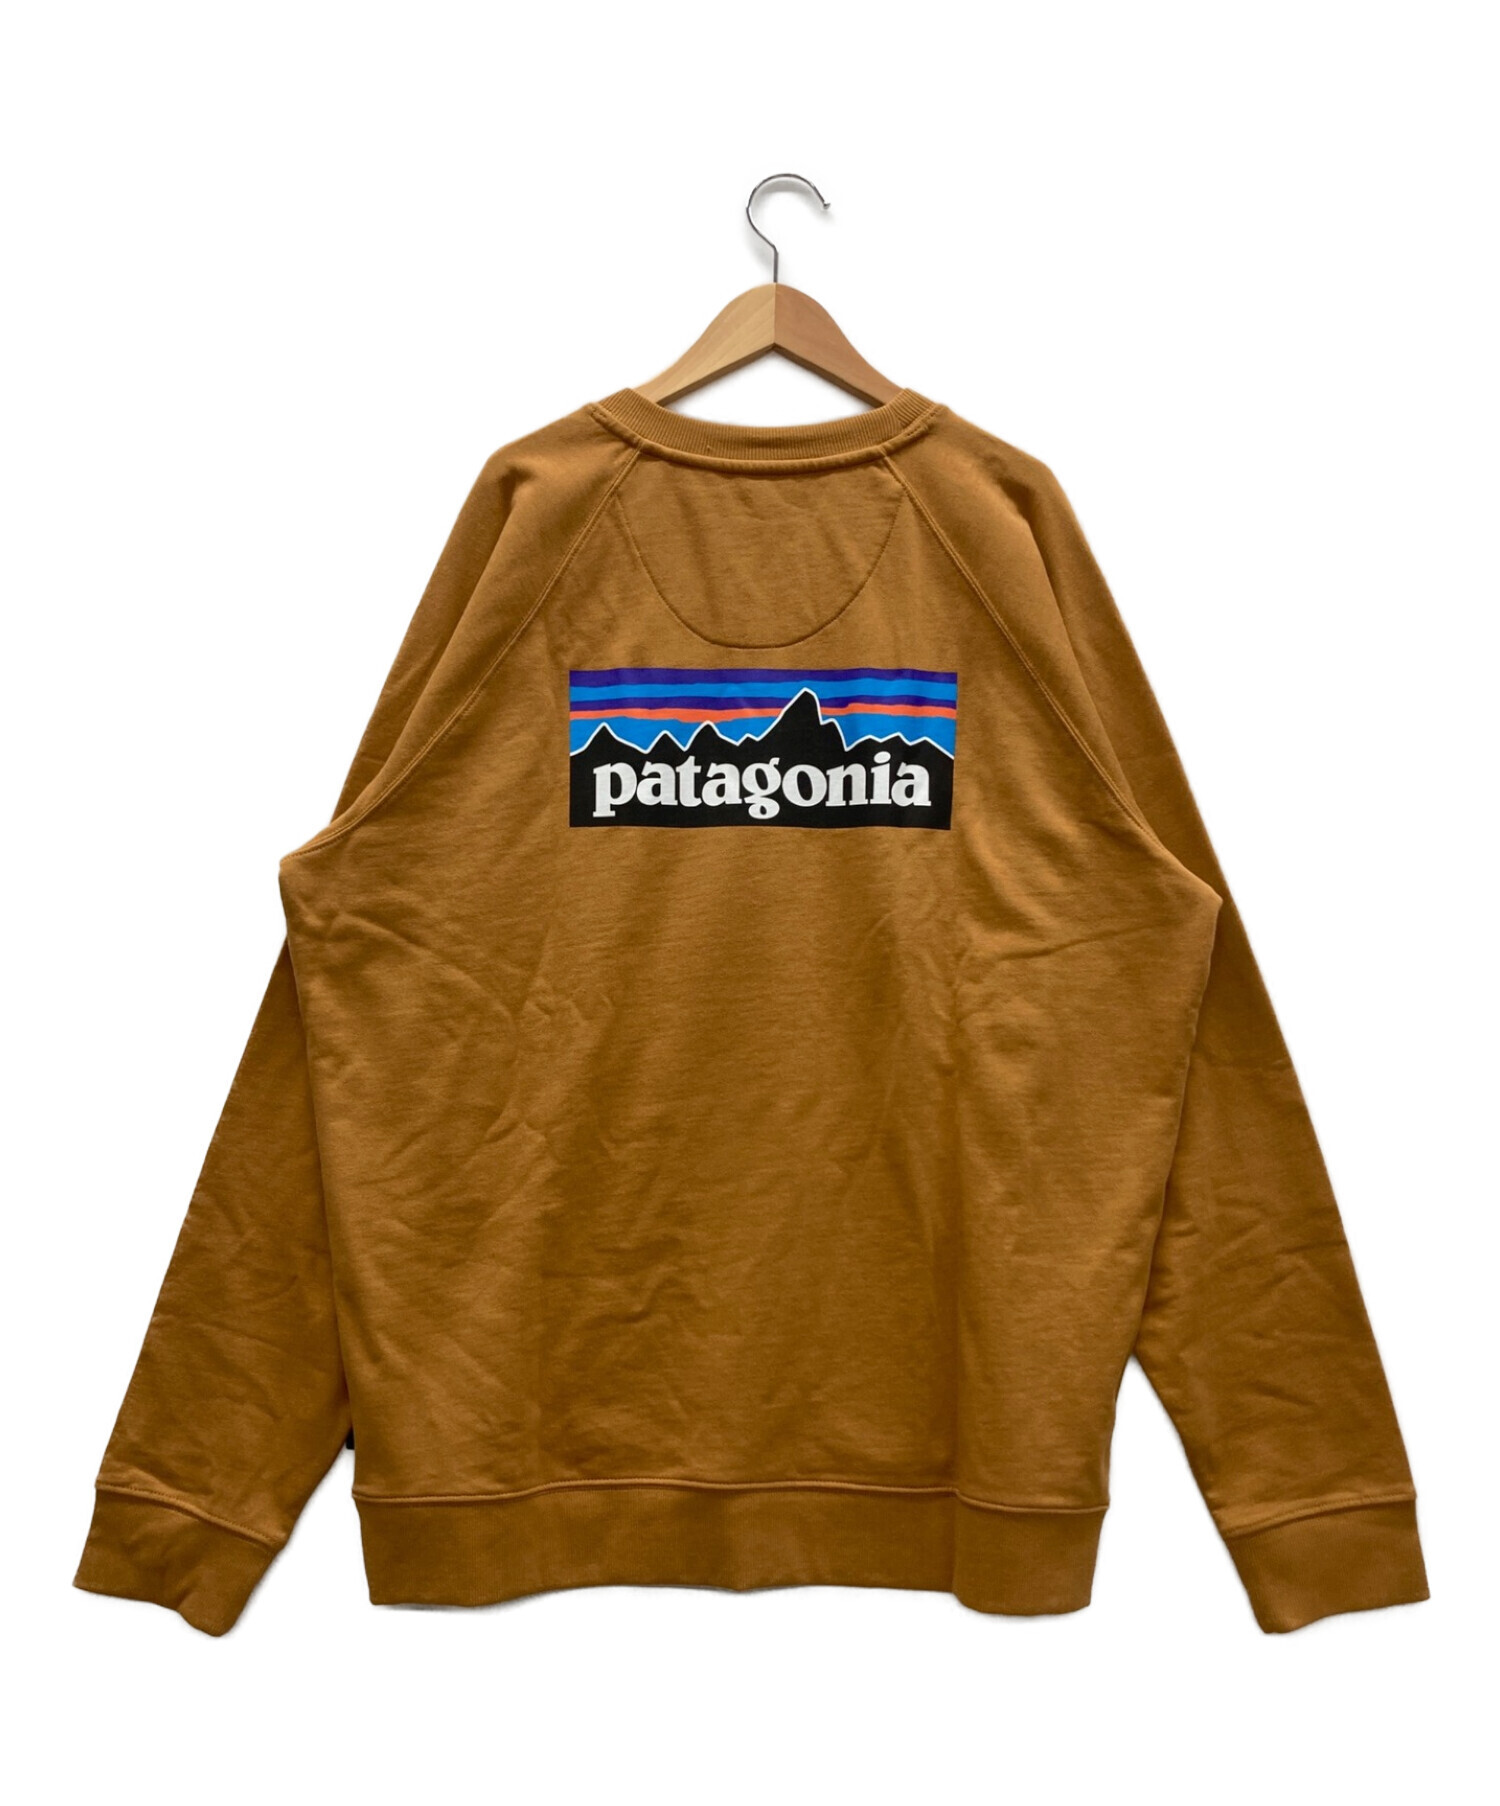 Patagonia (パタゴニア) スウェット サイズ:L 未使用品